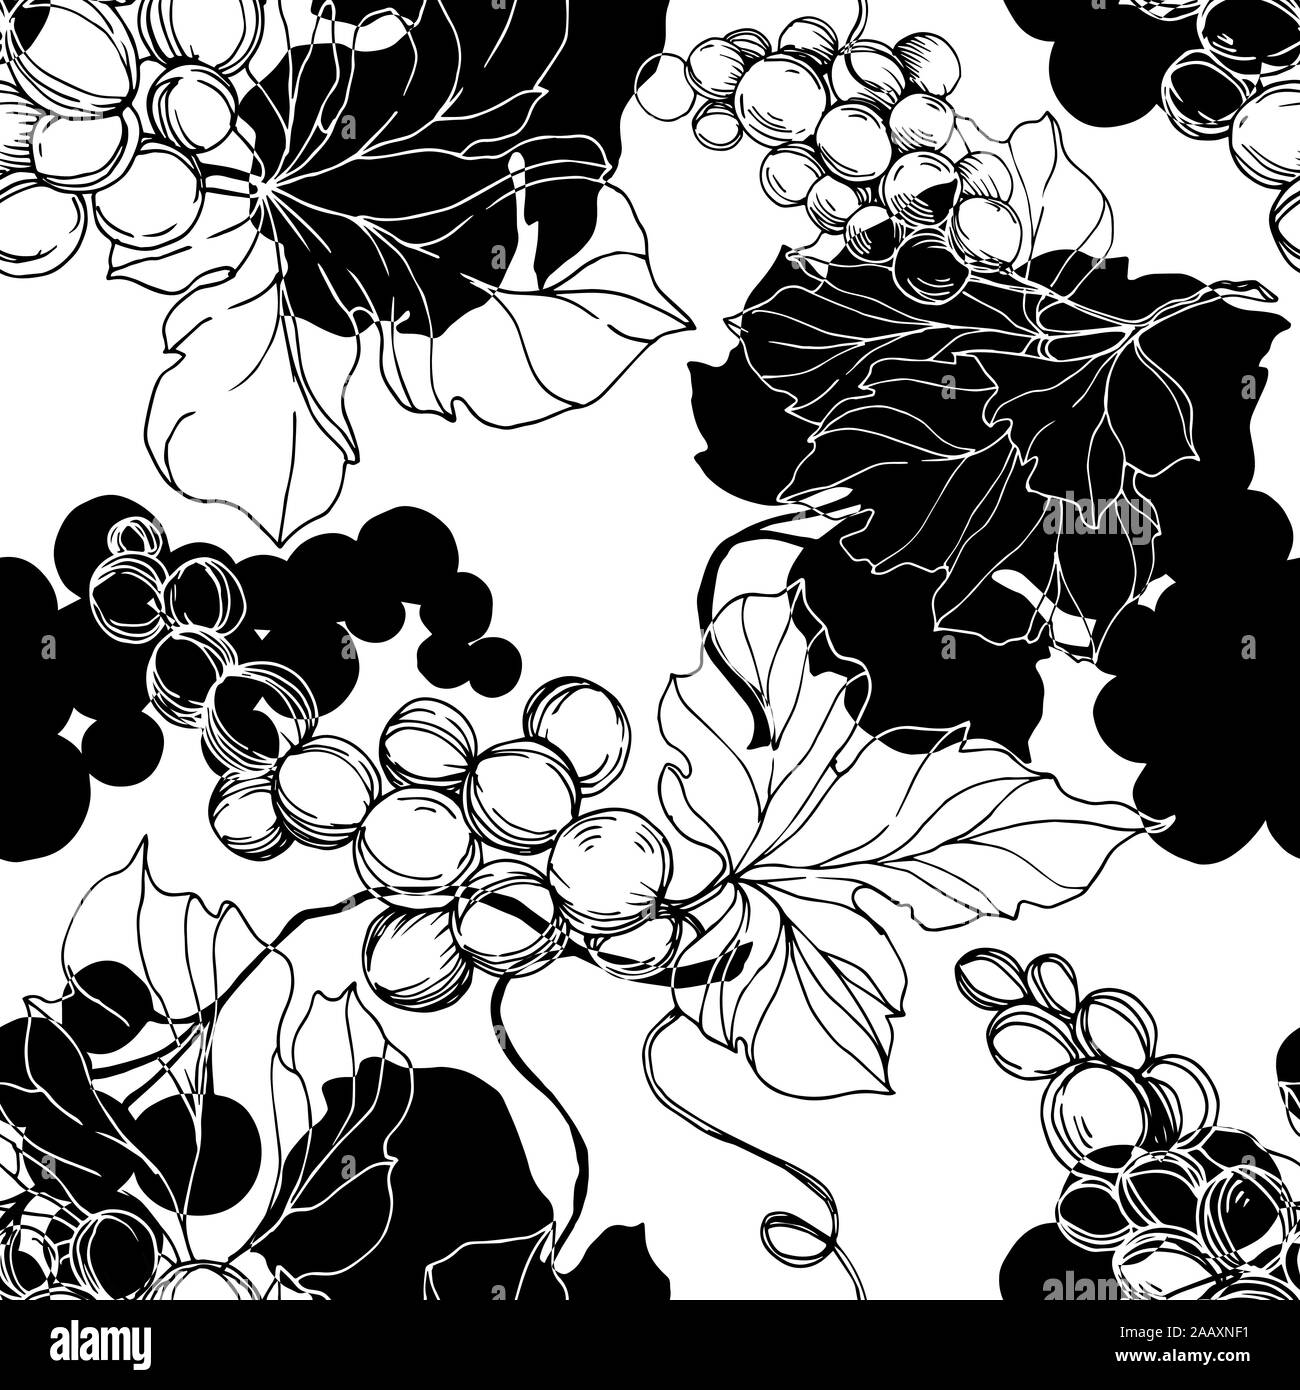 Raisin d'art Banque d'images noir et blanc - Page 3 - Alamy